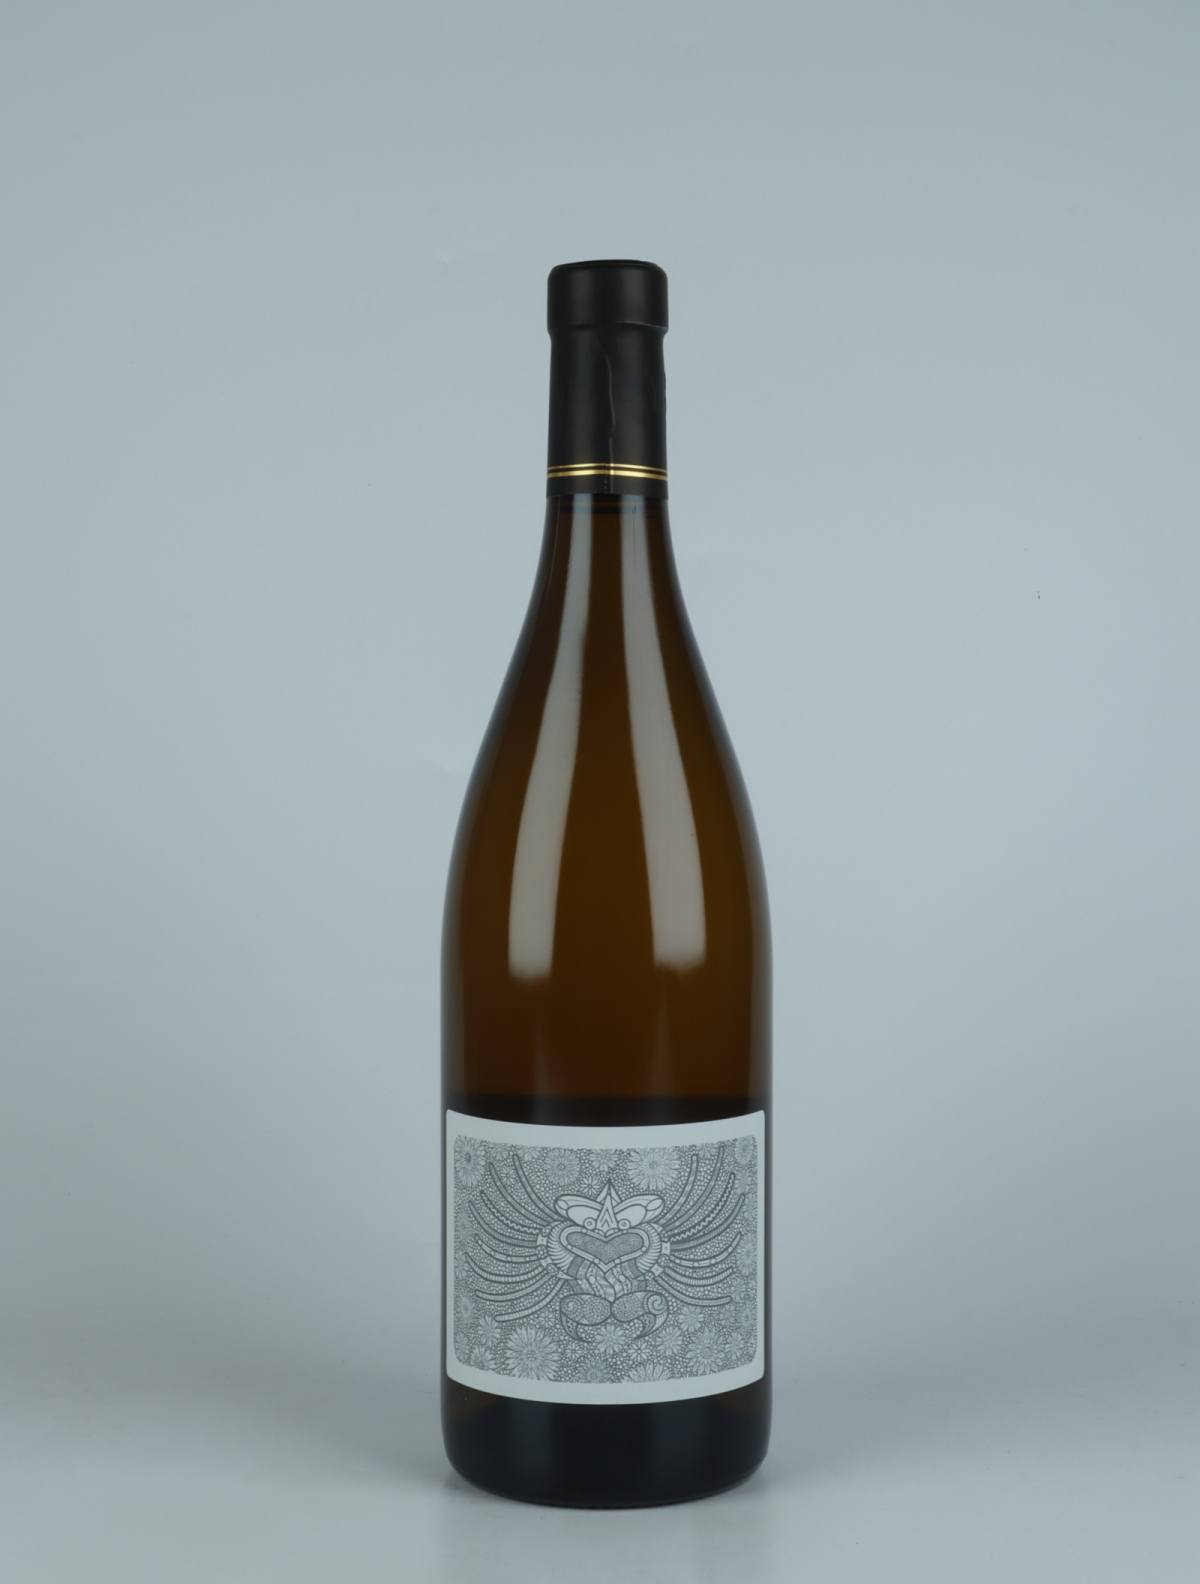 A bottle 2021 Colère de Zeus - Blanc White wine from Julien Courtois, Loire in France